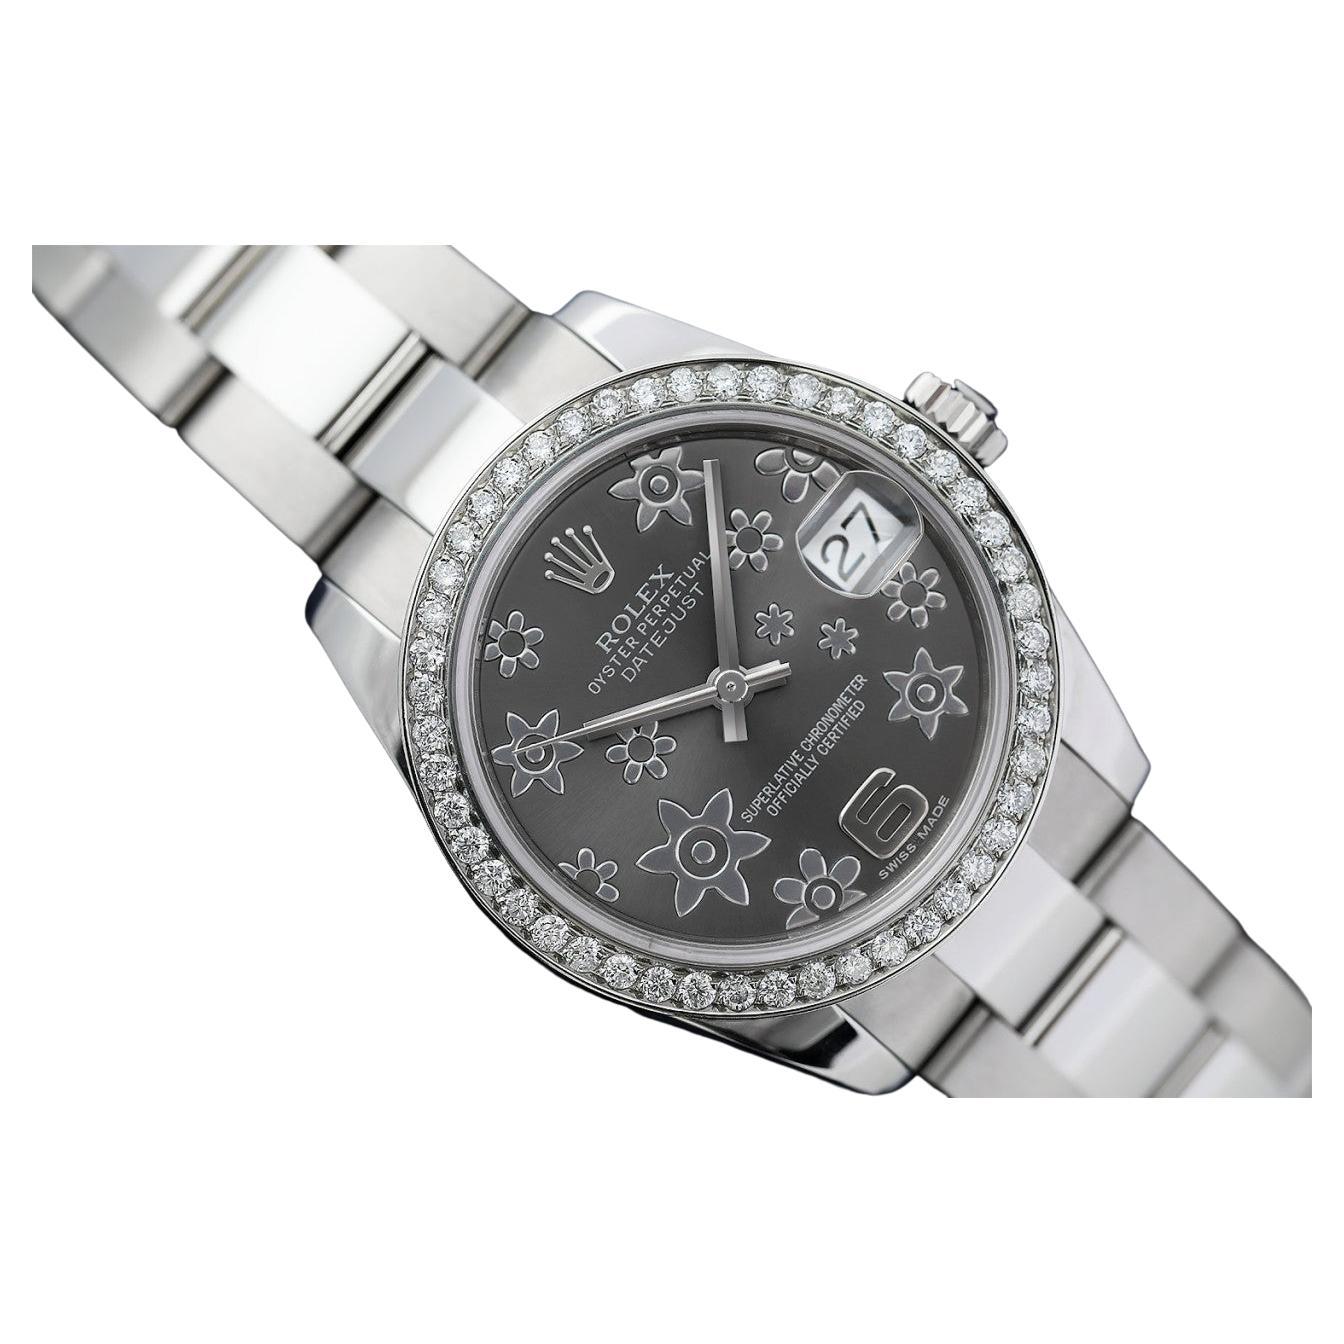 Rolex Montre Lady-Datejust en acier inoxydable avec cadran flottant gris et lunette en diamants